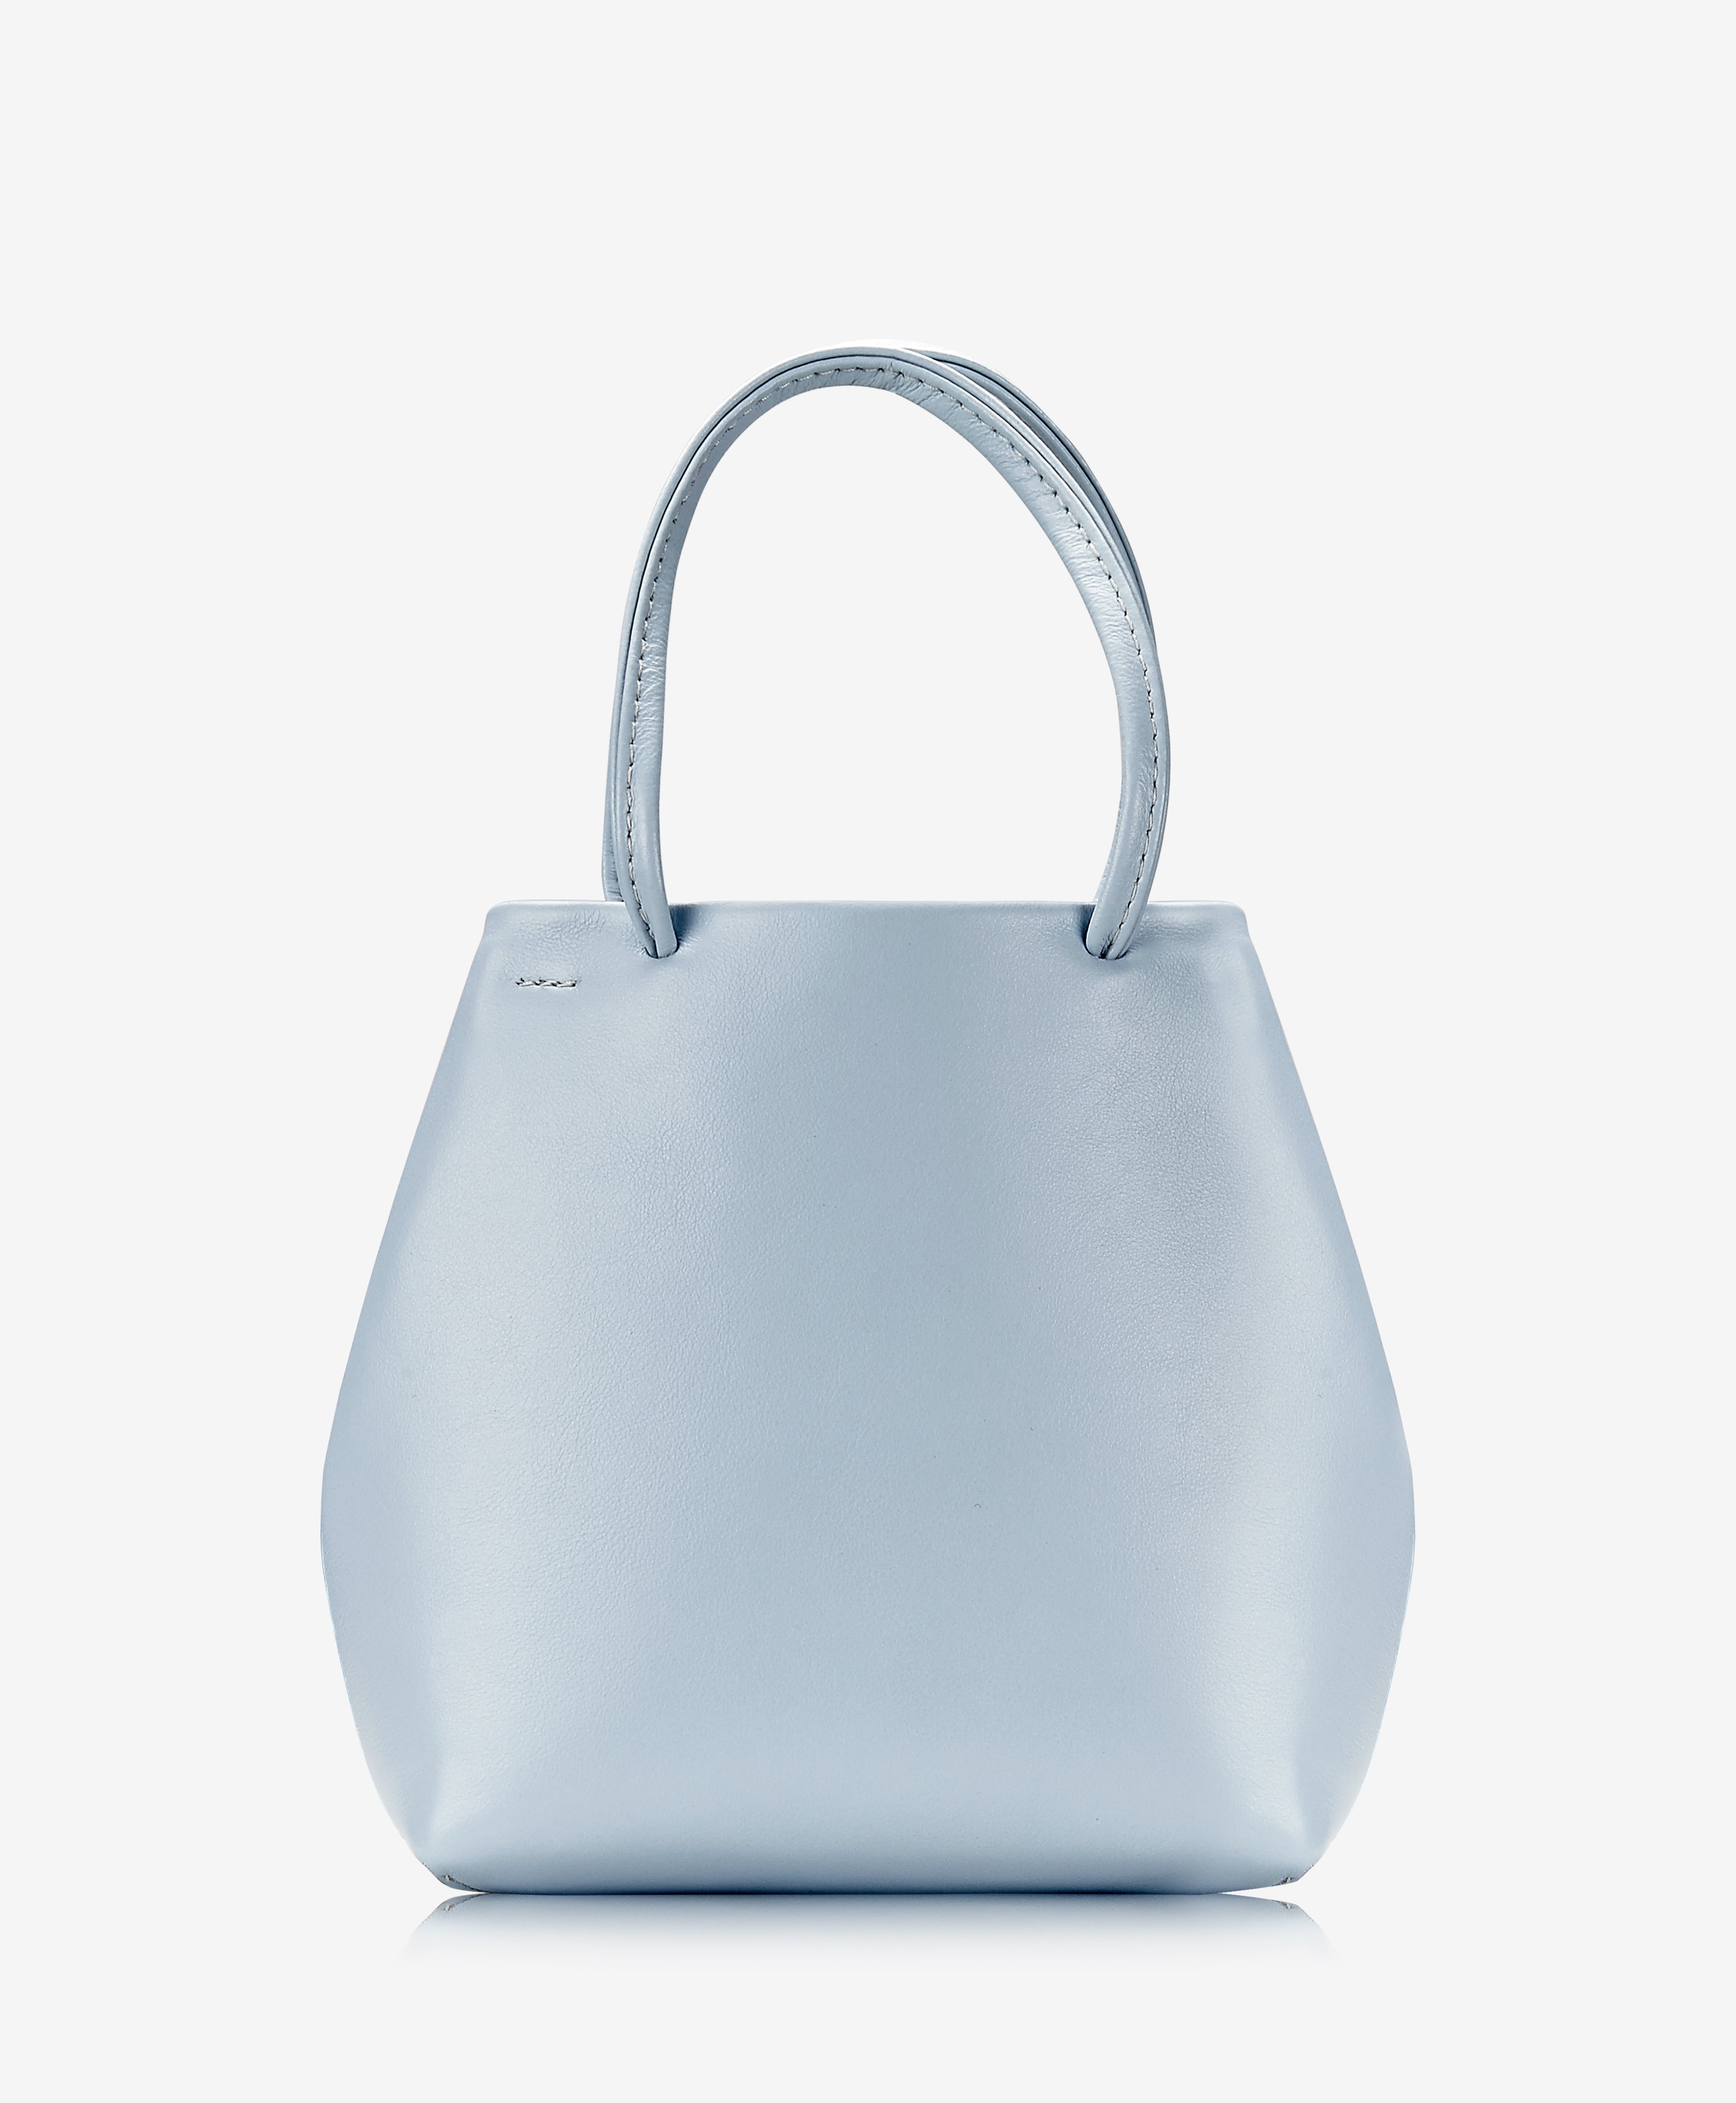 GiGi New York Sydney Mini Shopper Light Blue Italian Calfskin Leather